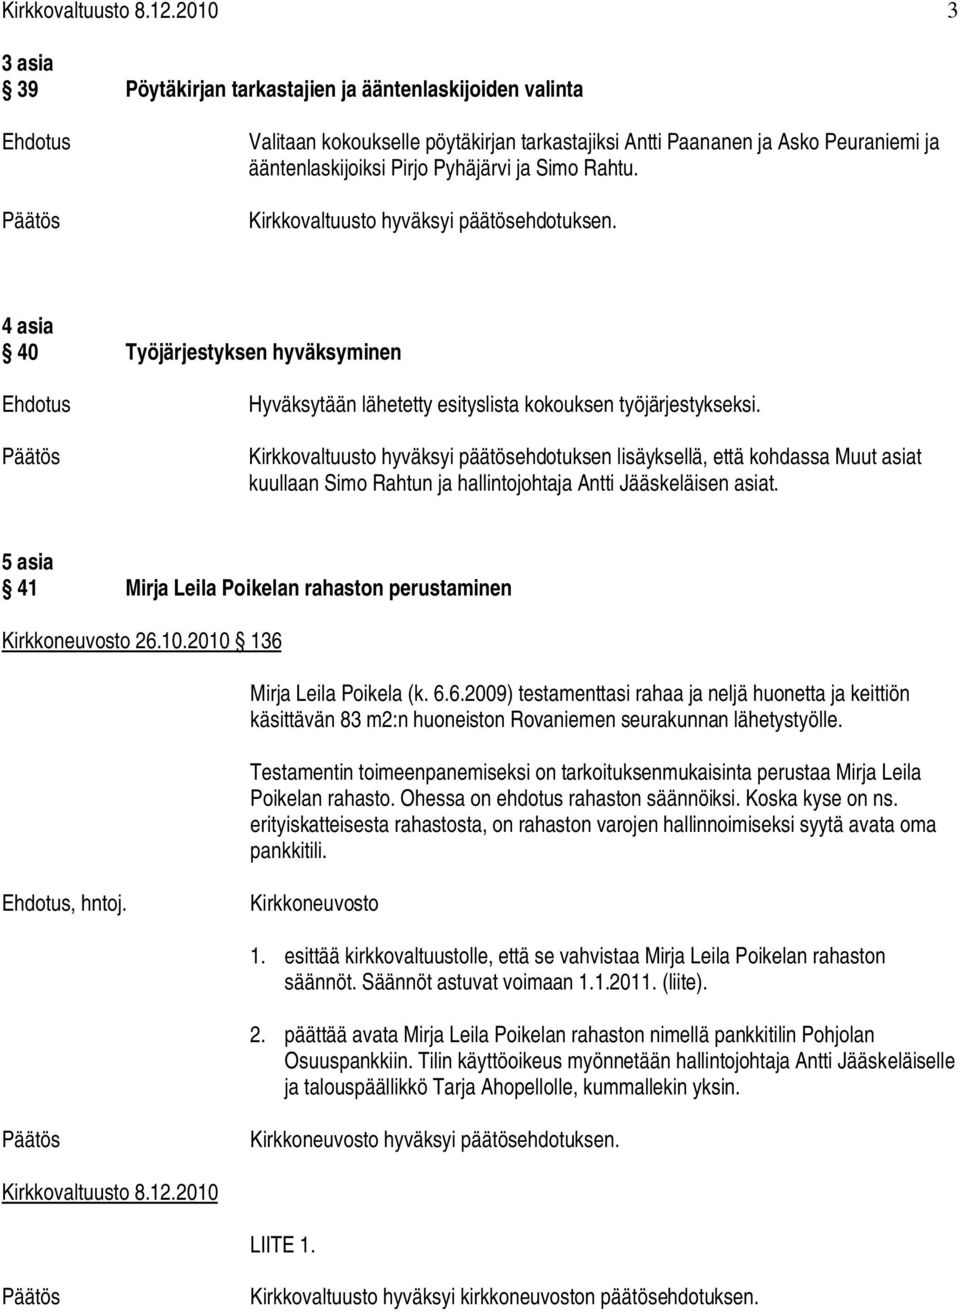 Kirkkovaltuusto hyväksyi päätösehdotuksen lisäyksellä, että kohdassa Muut asiat kuullaan Simo Rahtun ja hallintojohtaja Antti Jääskeläisen asiat.